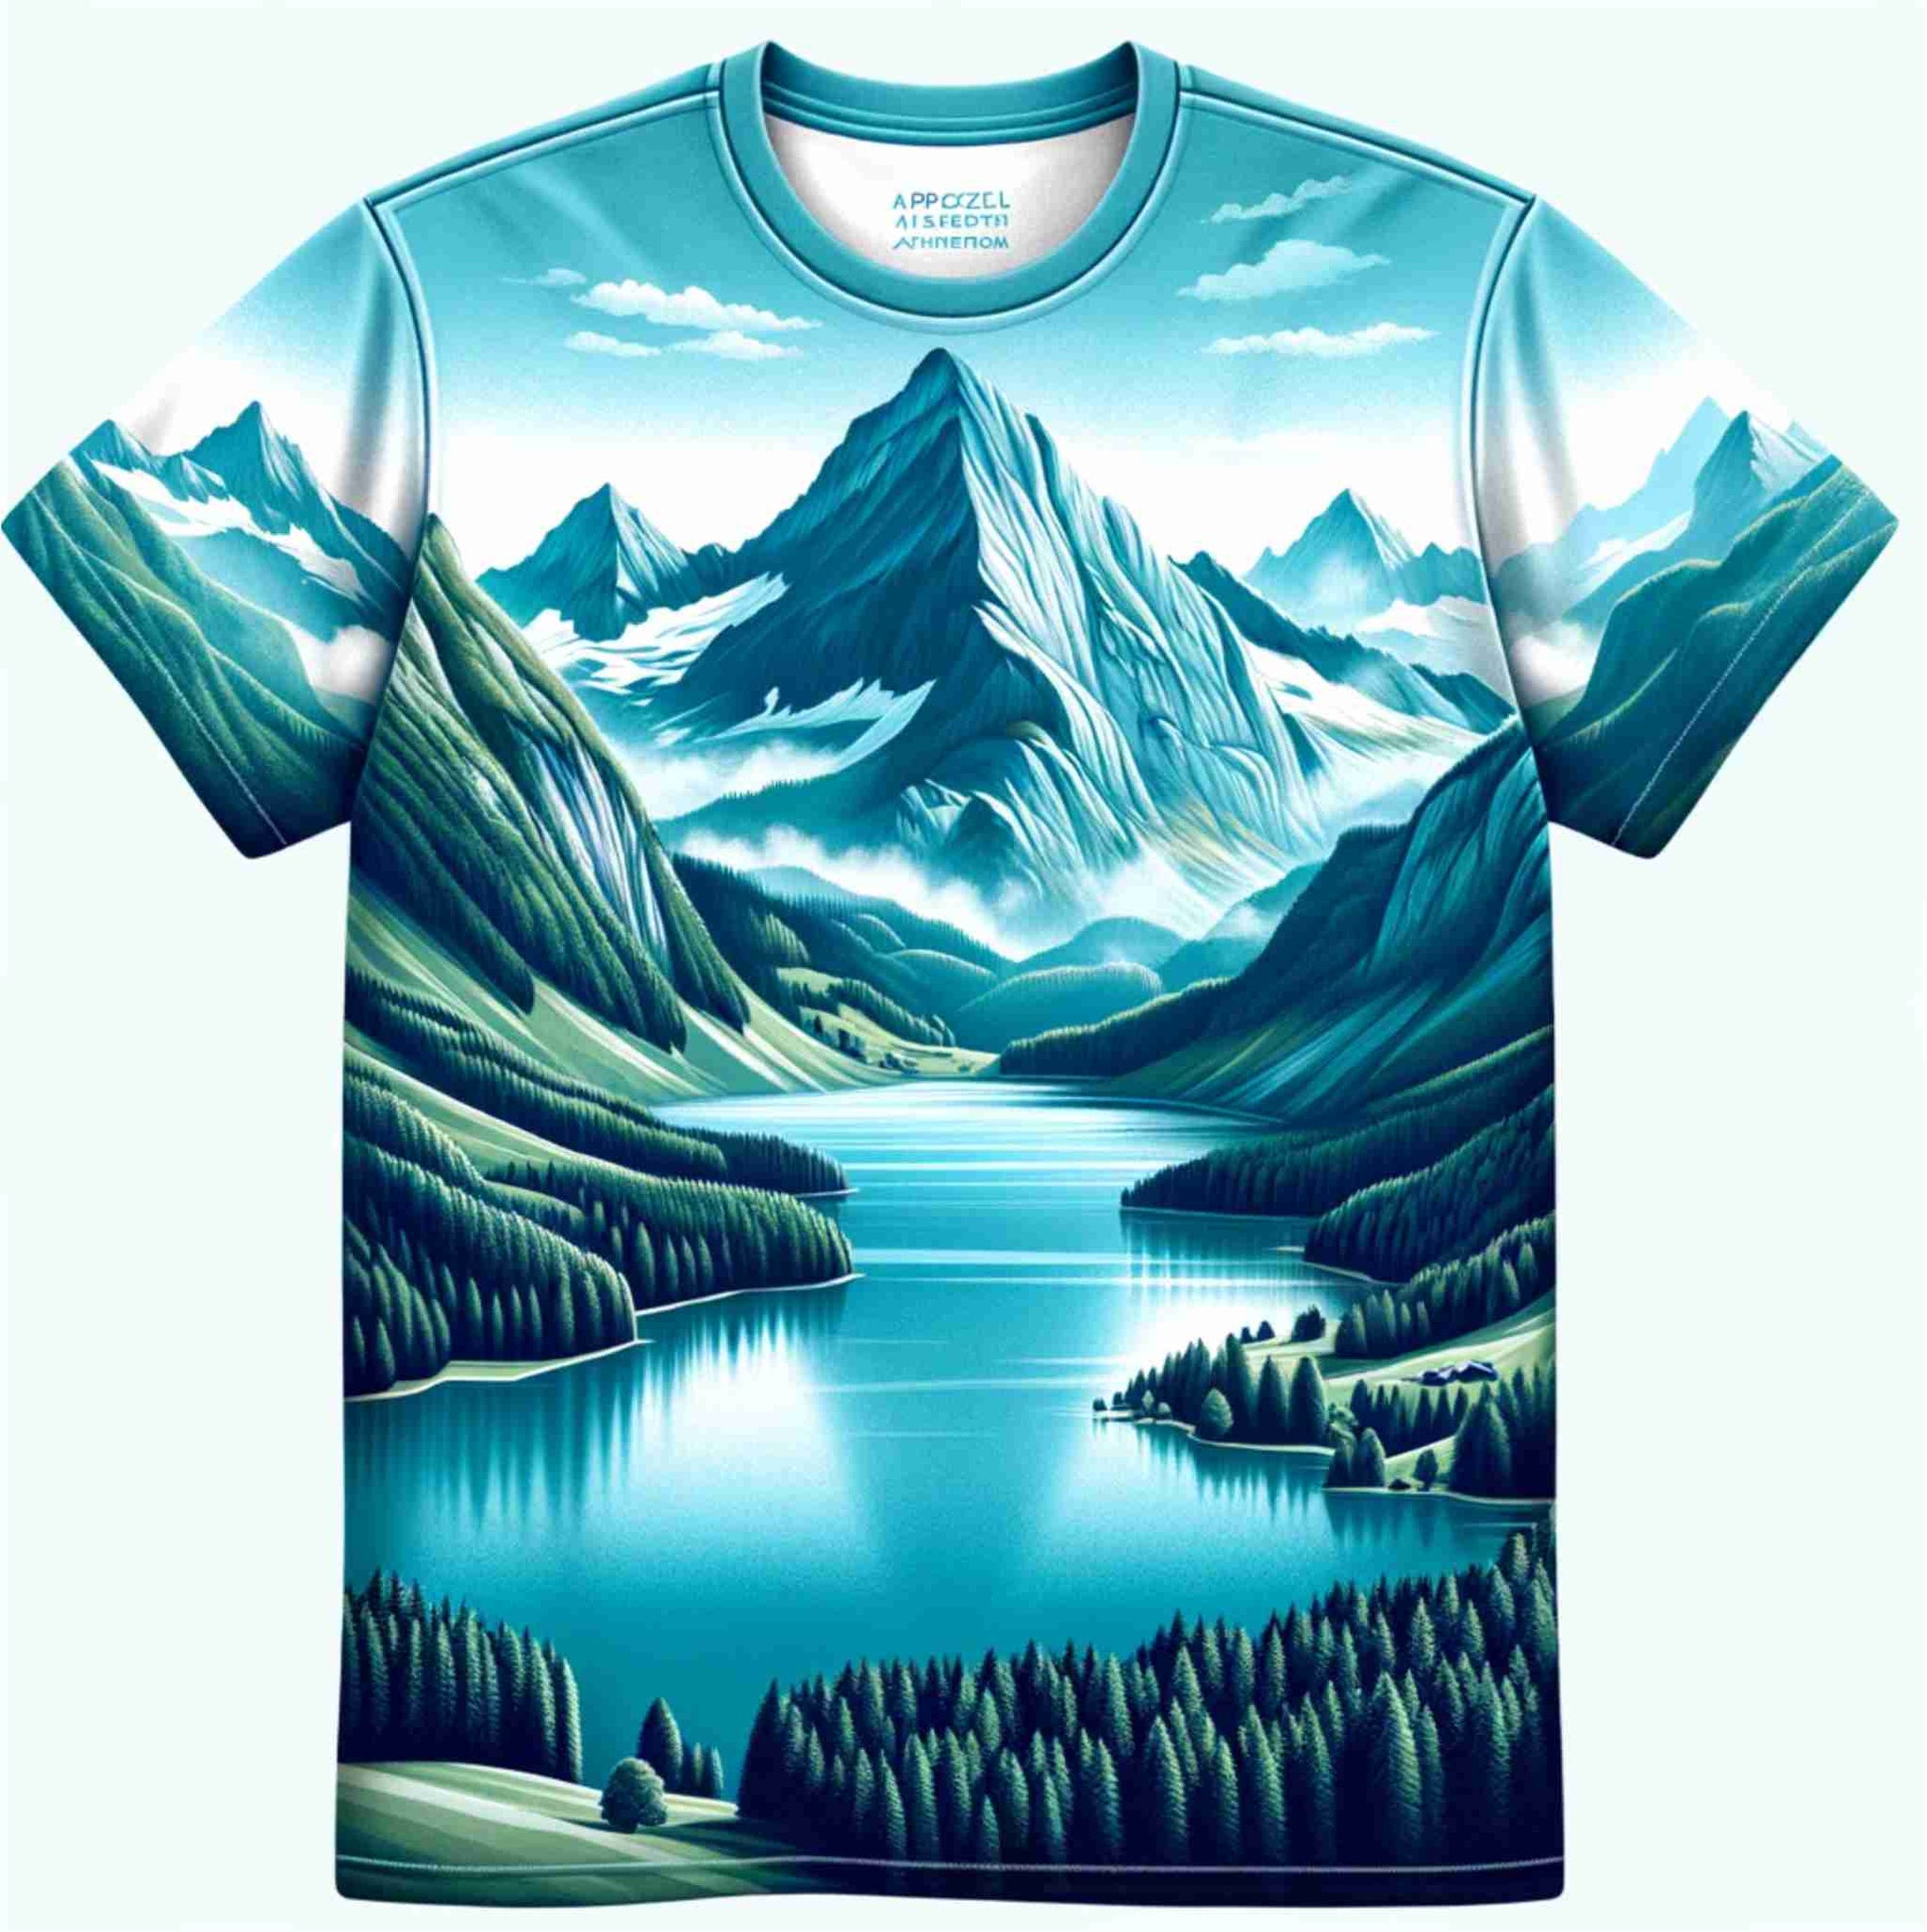 T-Shirt bedrucken in Appenzell Ausserrhoden